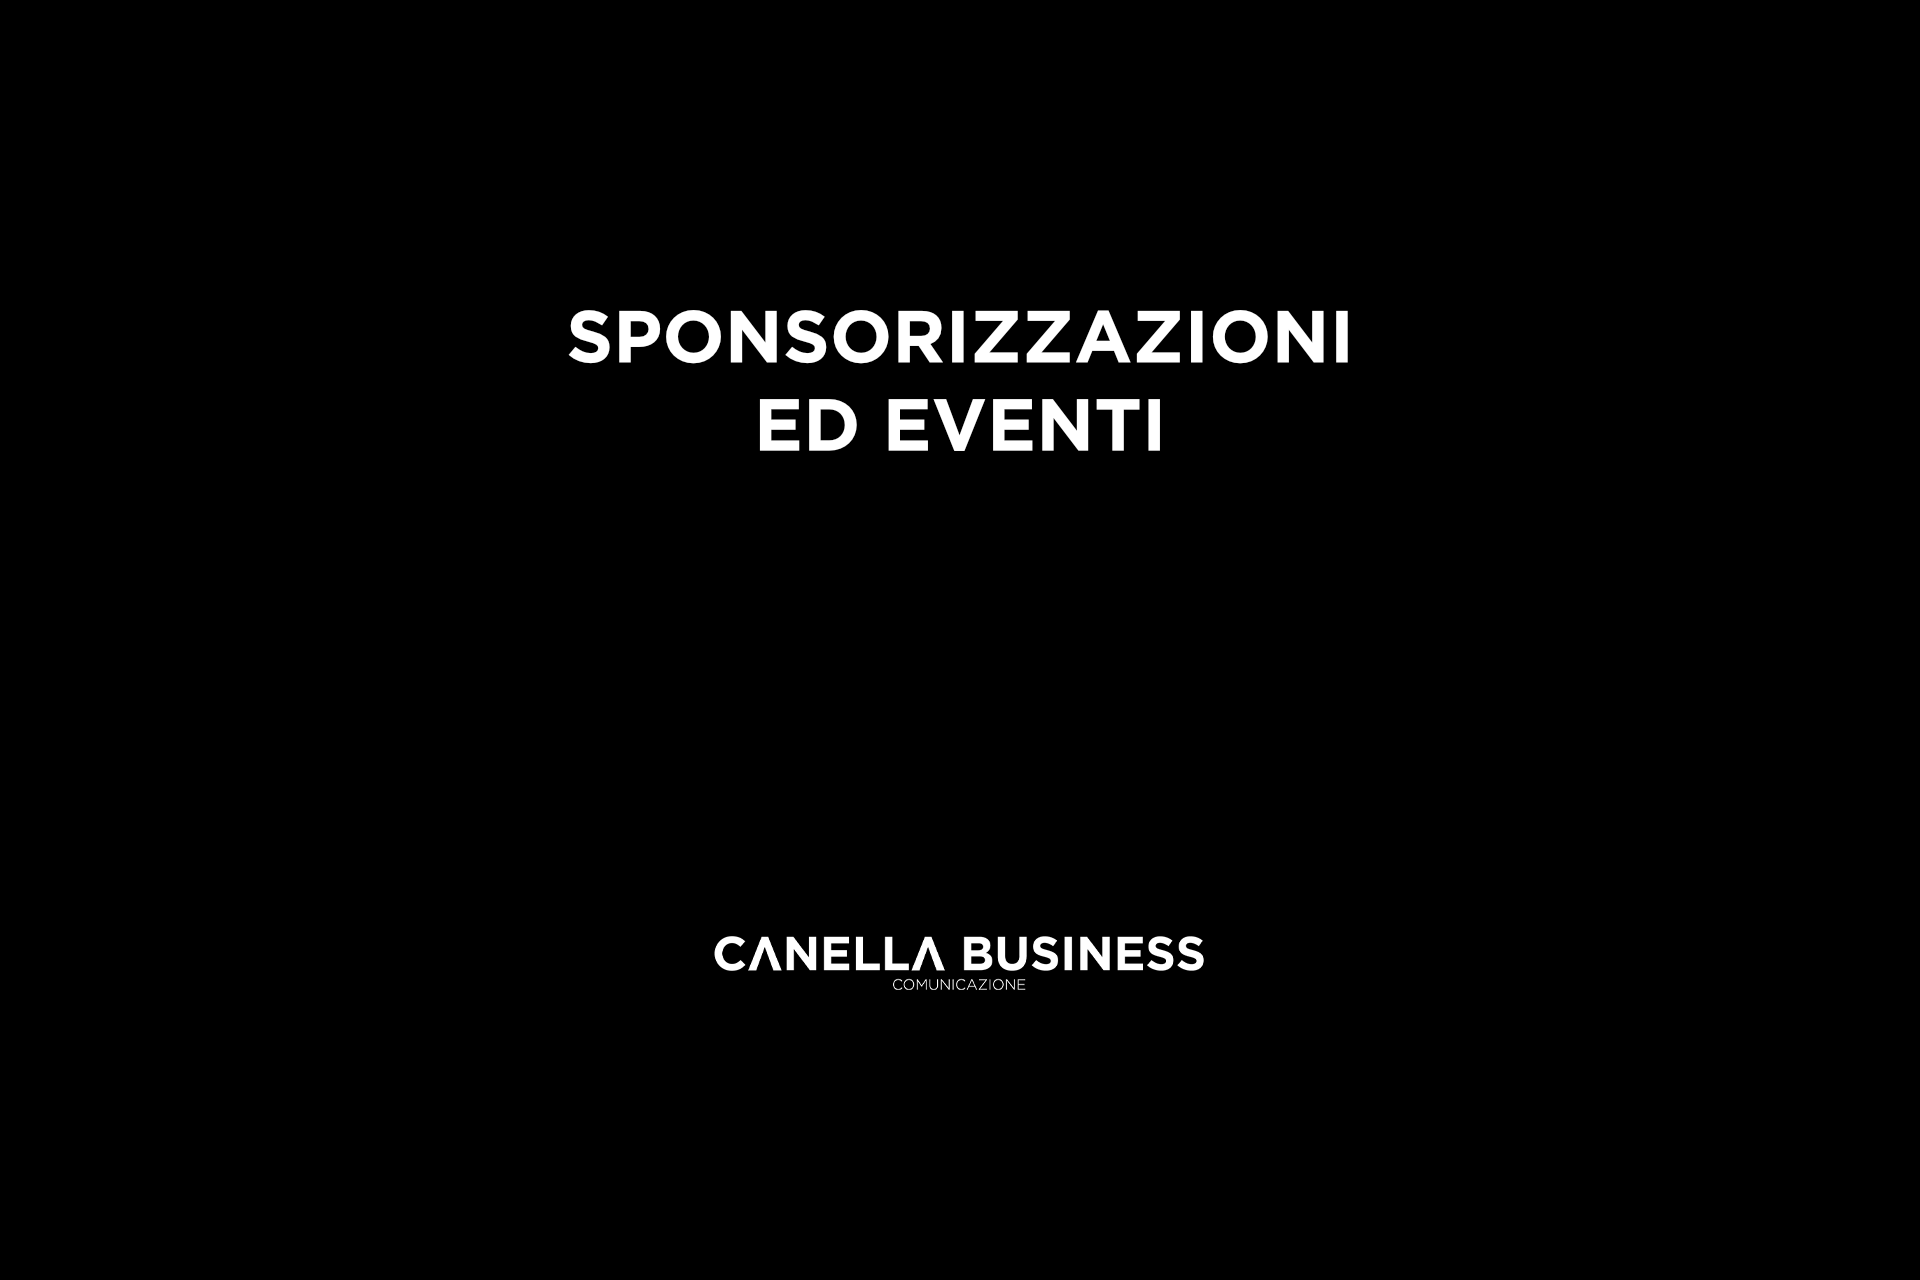 Sponsorizzazioni ed eventi